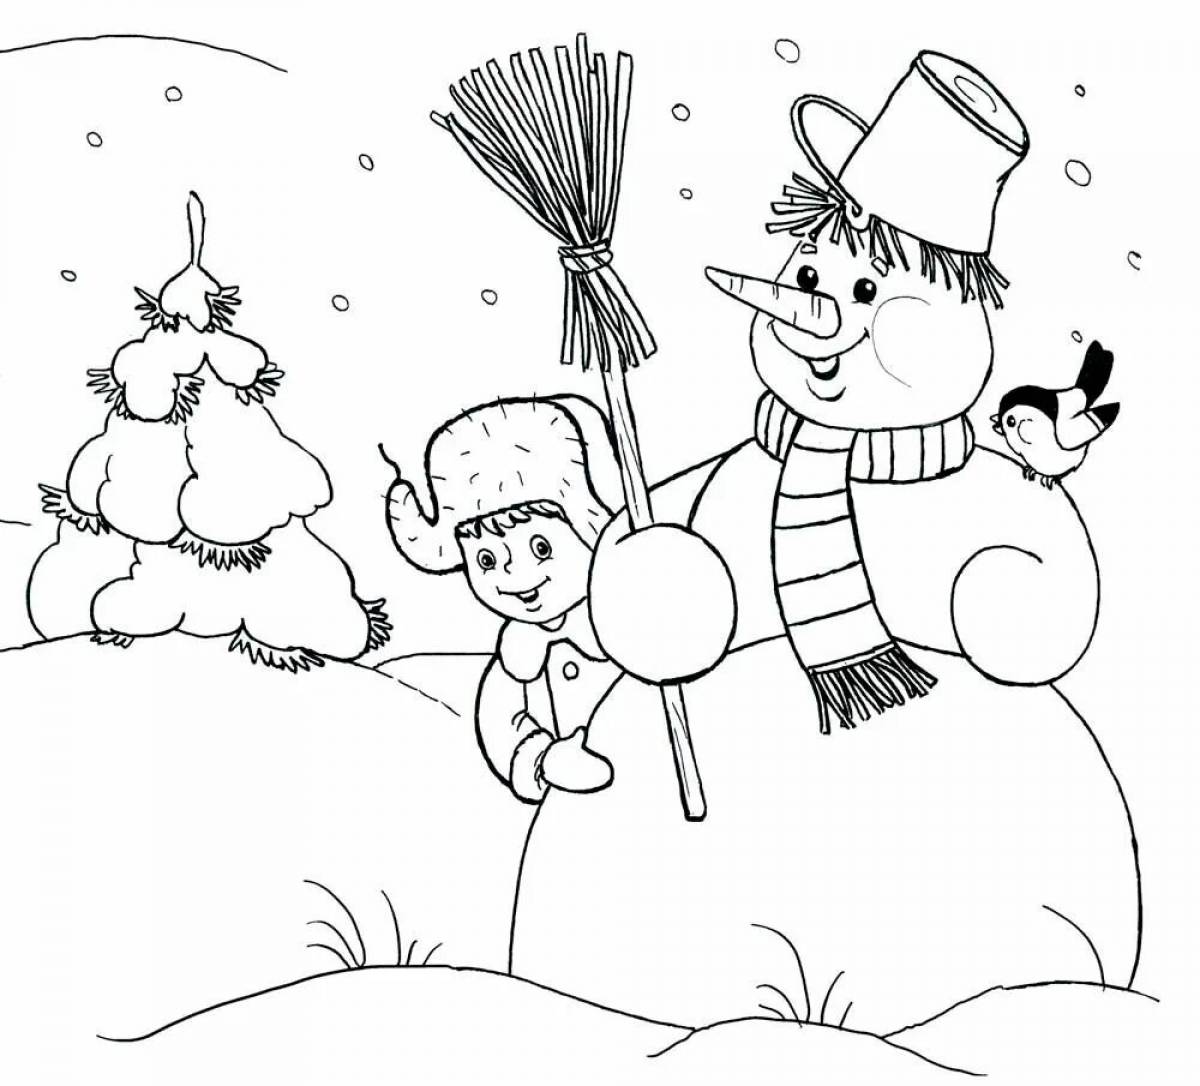 Joyful winter coloring book for preschoolers